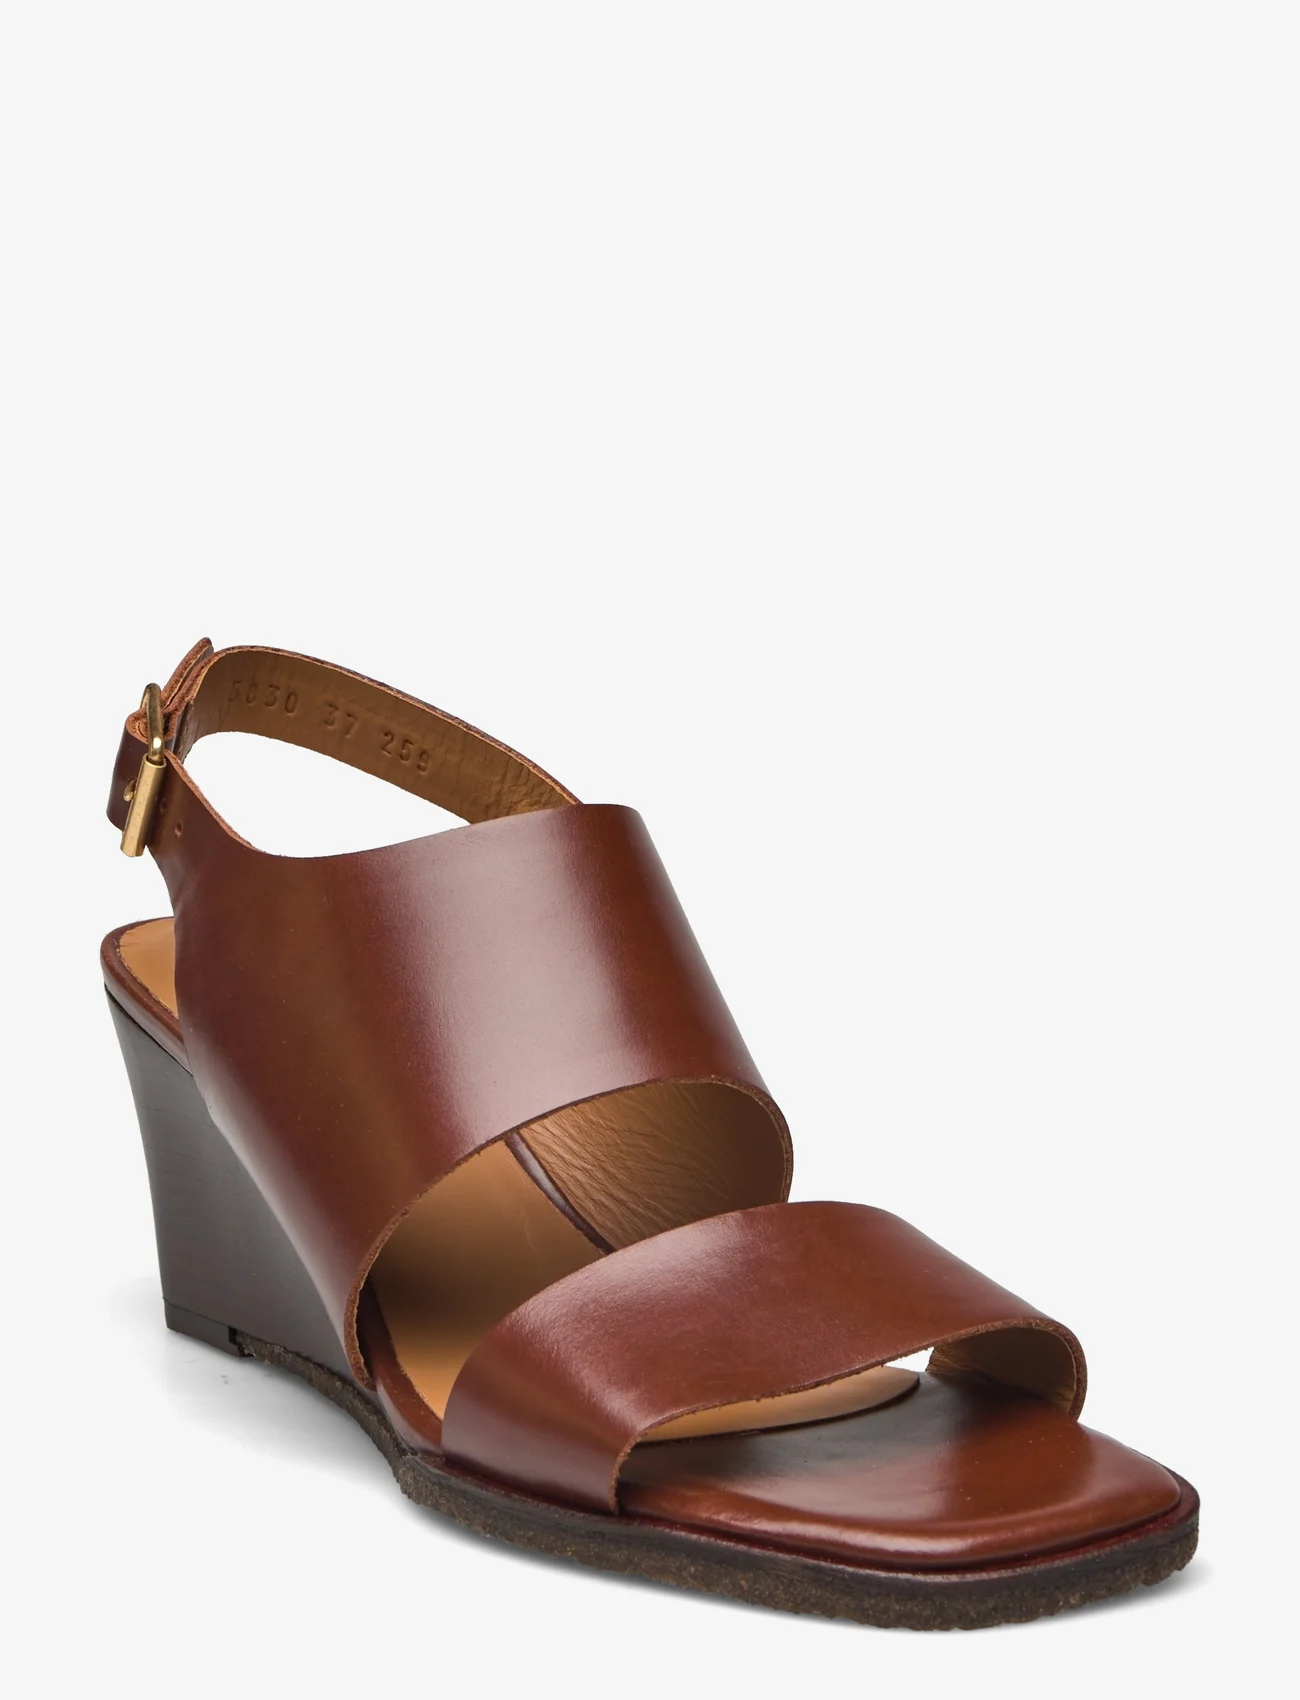 ANGULUS - Sandals - Block heels - sandały na obcasie - 1837 brown - 0